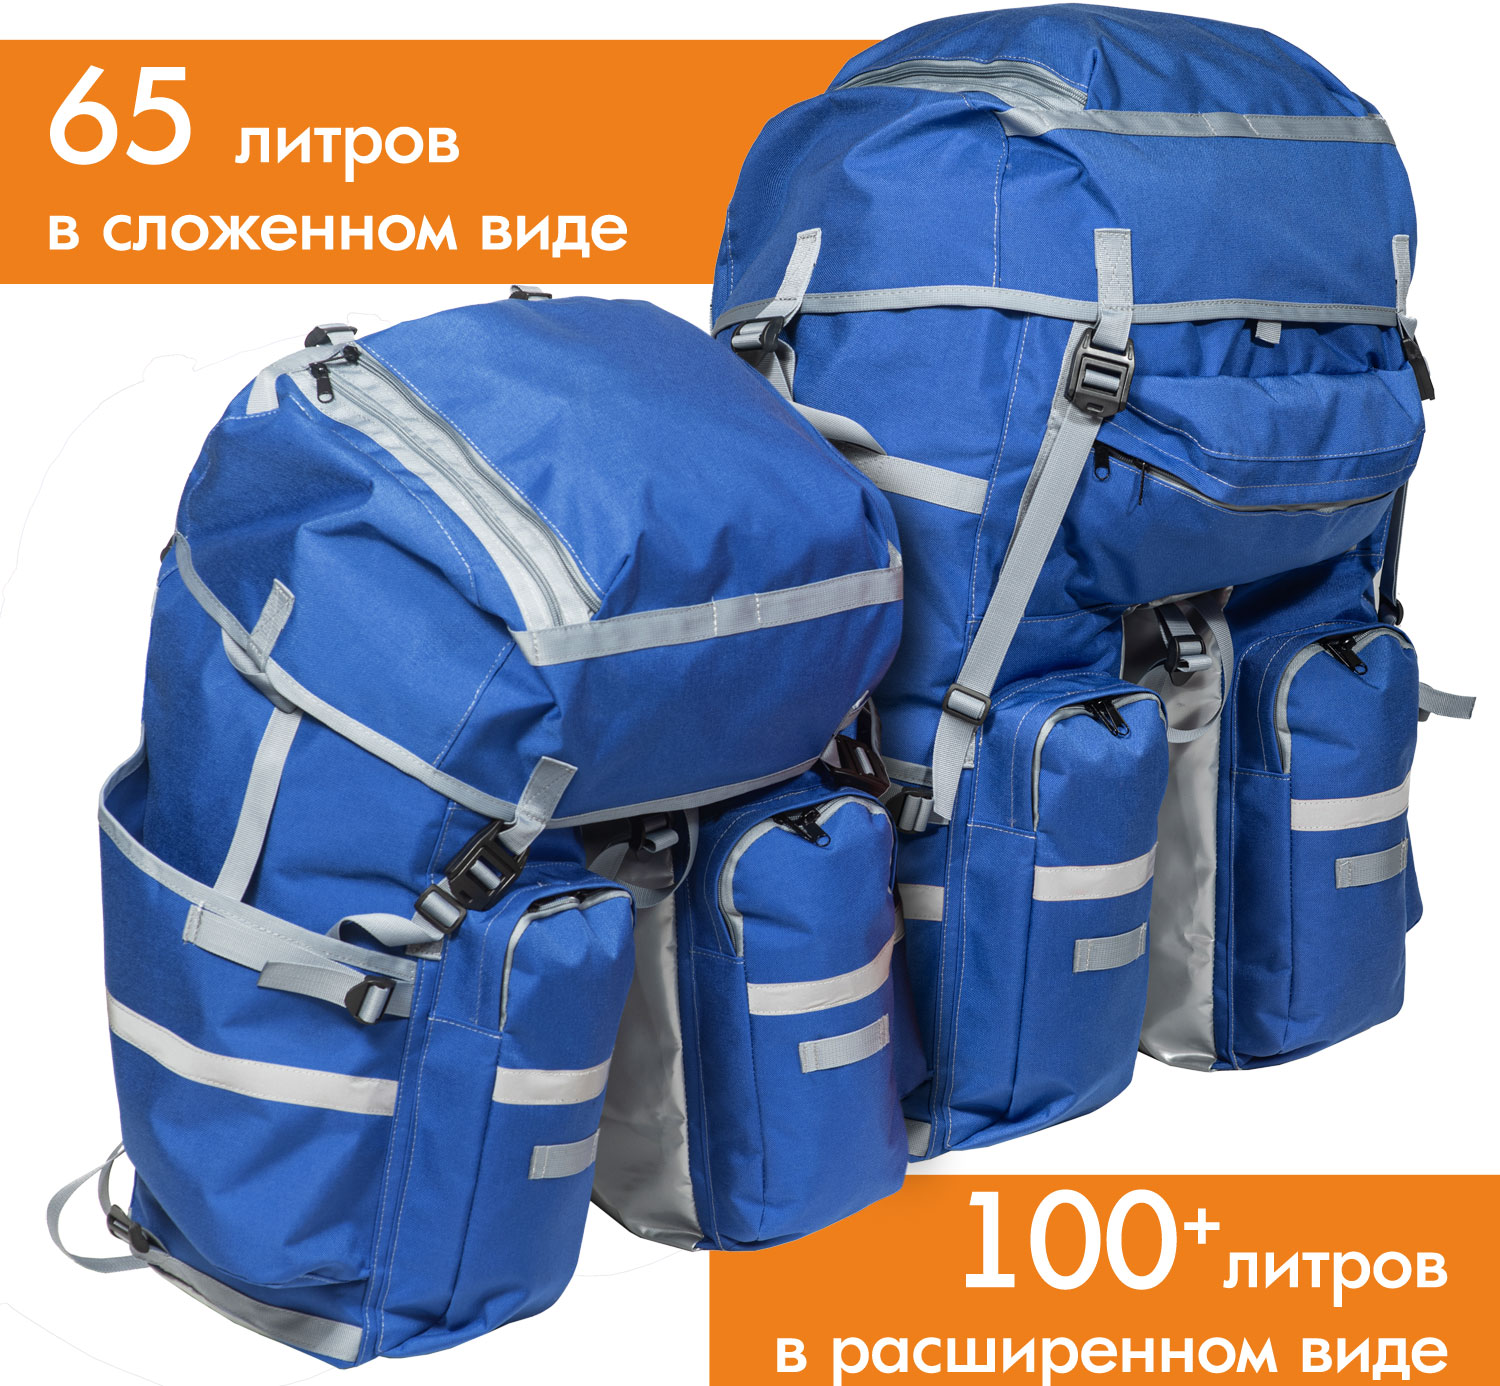 Велосипедный рюкзак на багажник 65 литров в сложенном виде, 100+ литров в расширенном виде